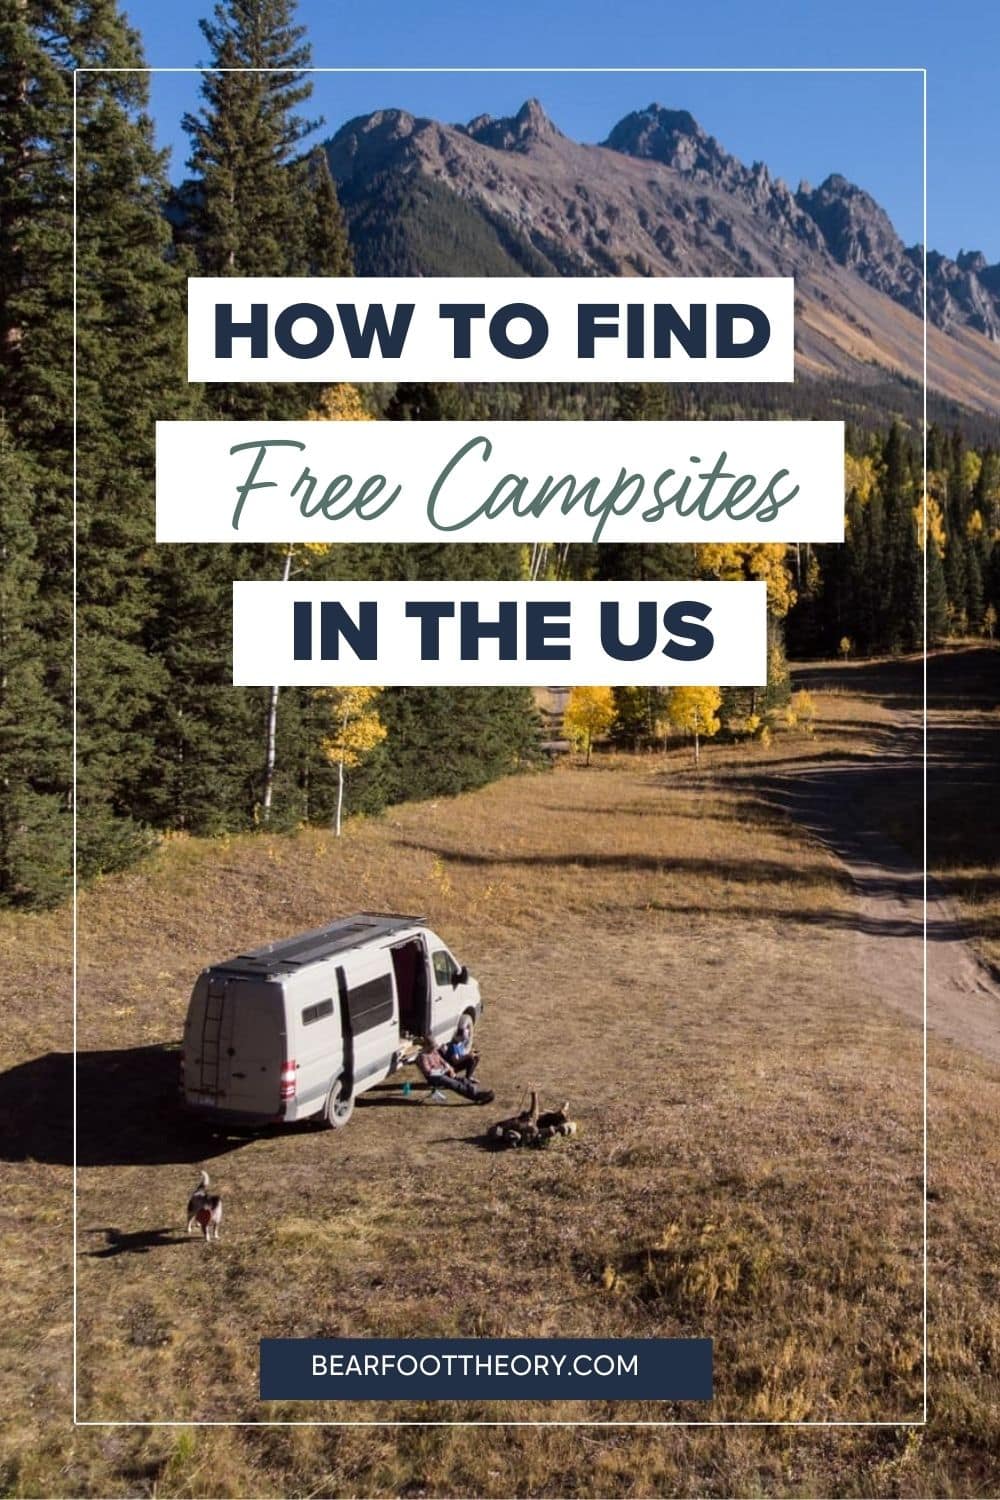 了解在哪里以及如何在你的下一次旅行中找到免费的露营地，下面列出了寻找分散露营地的最佳网站、应用程序和地图。